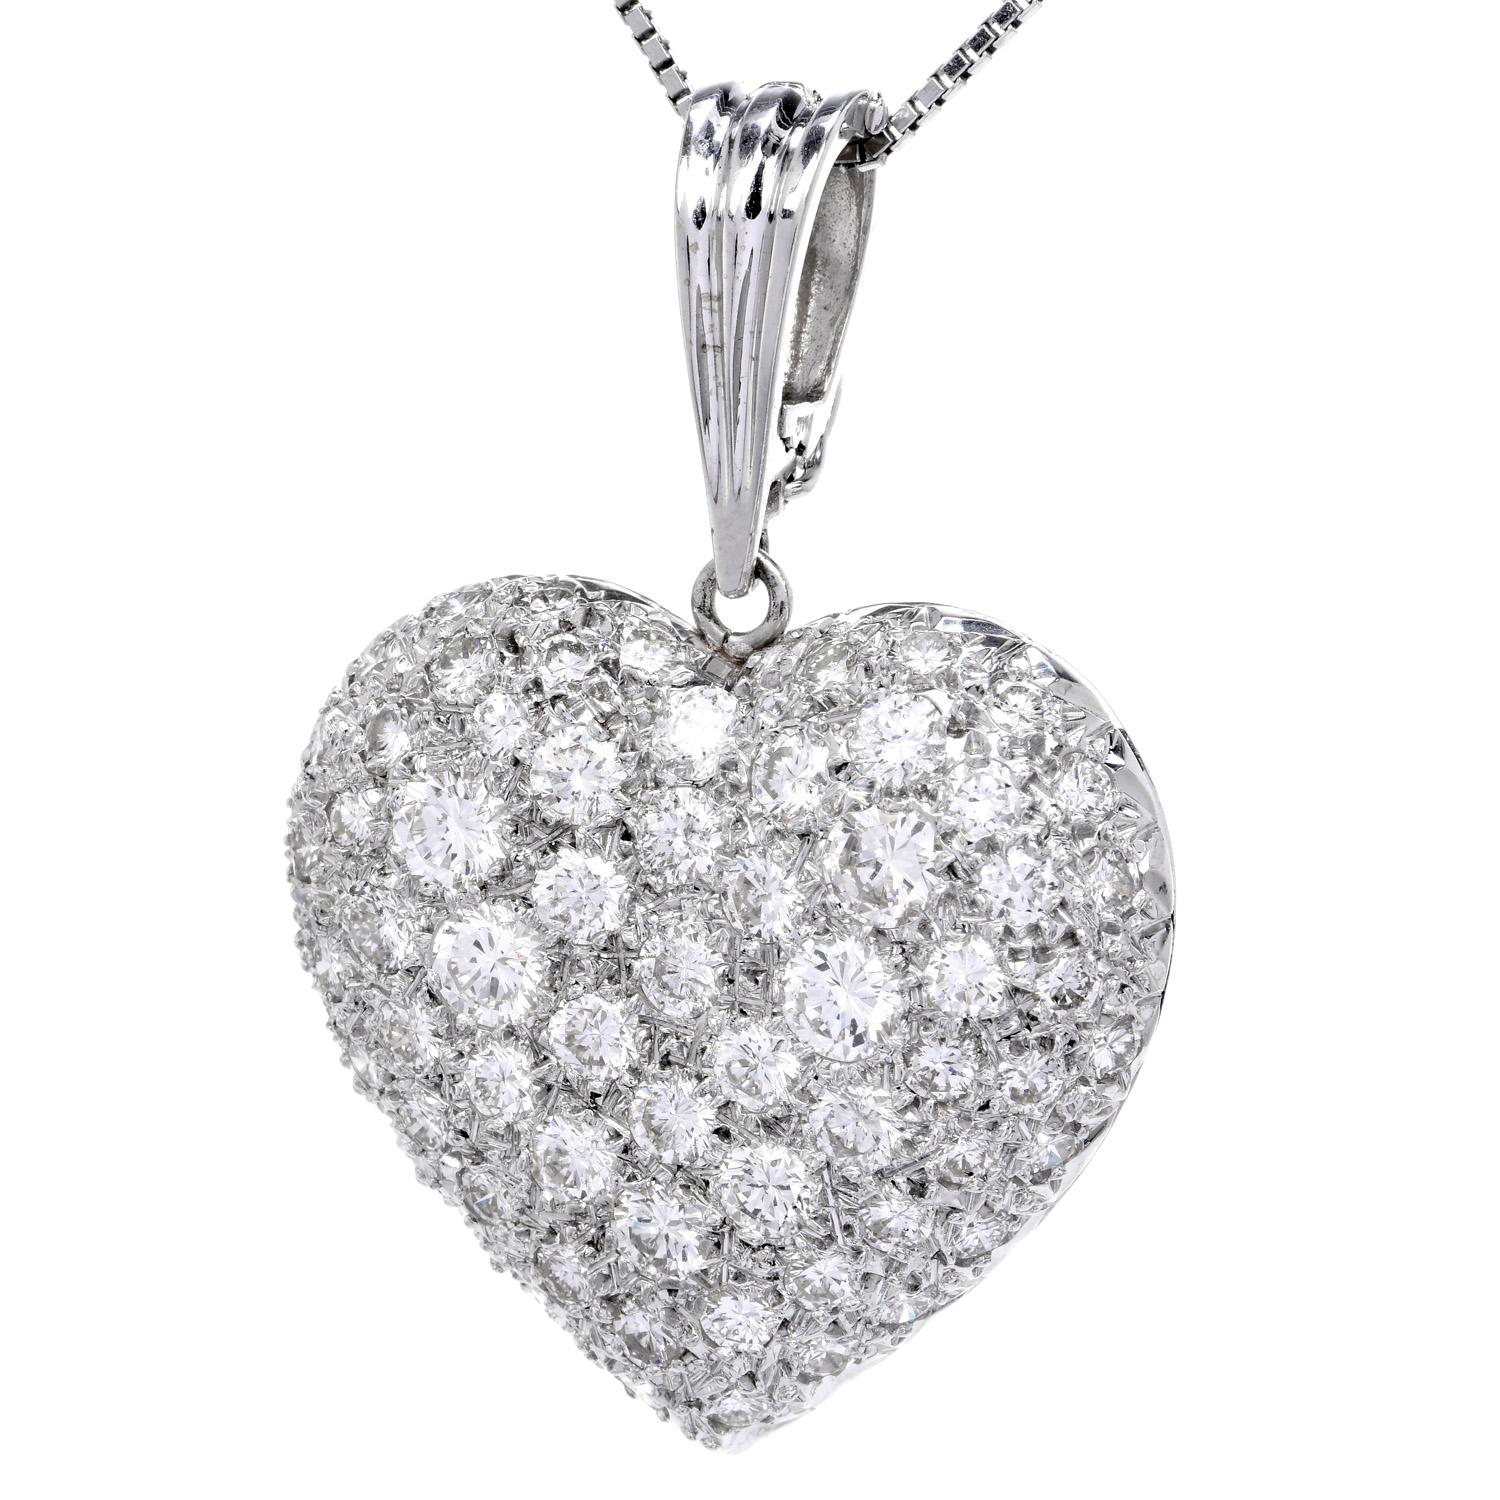 Faites de chaque jour une journée pleine d'éclat et de romance avec cet éblouissant grand pendentif enhancer inspiré du cœur, il est fait d'or 18k .

Il s'agit de (65) diamants de taille ronde d'un blanc éclatant, de couleur G-H et de pureté VS,